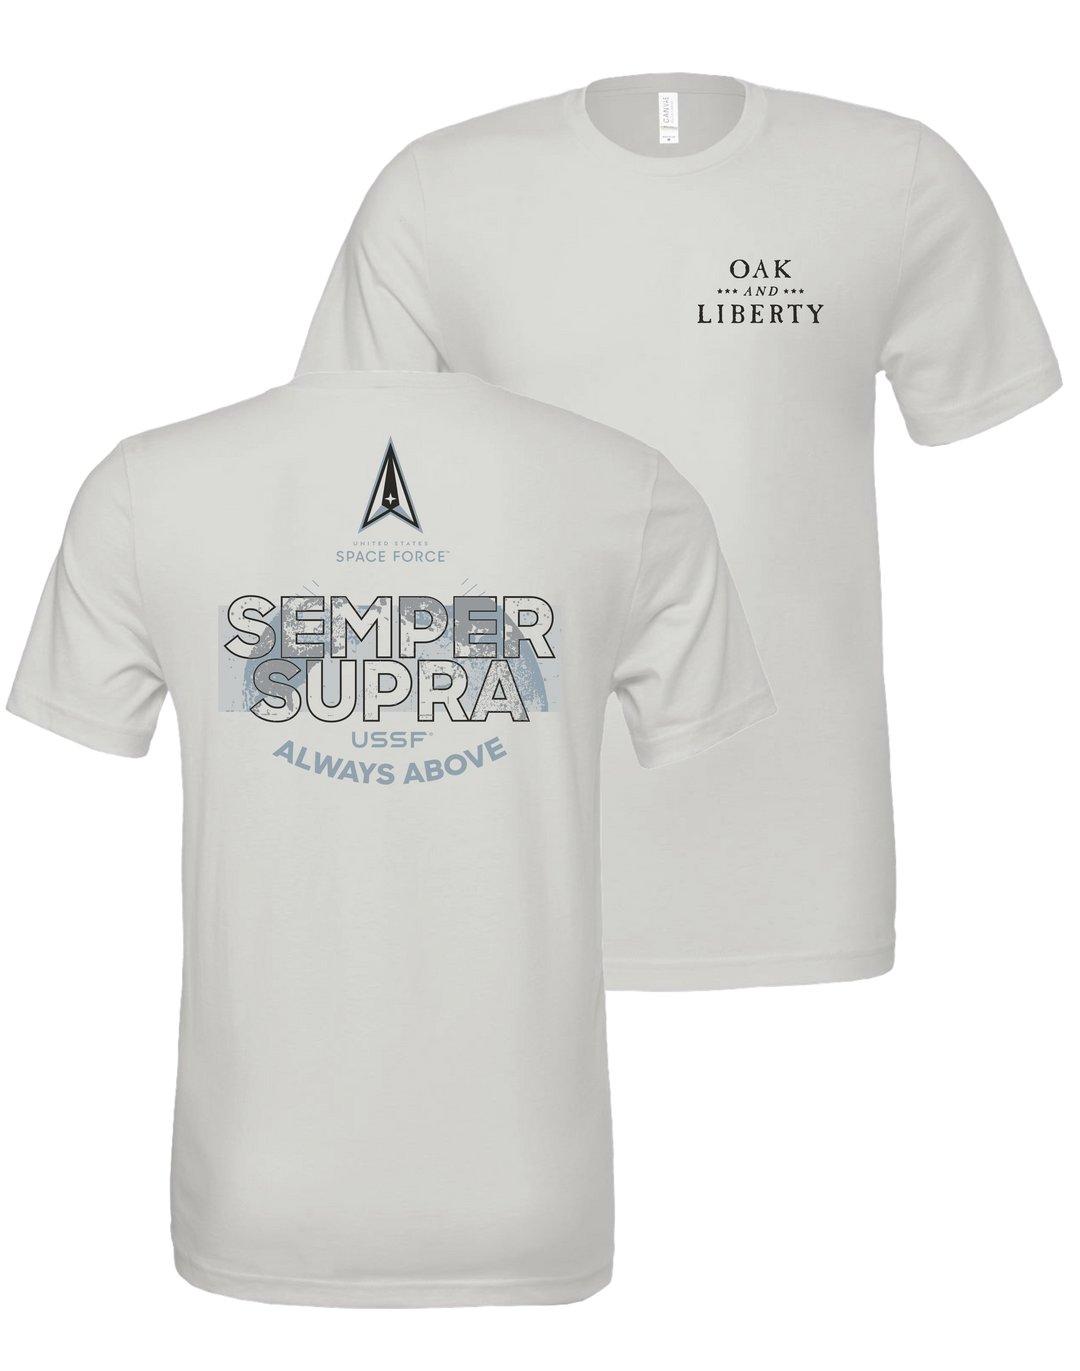 U.S. Space Force Semper Supra T-Shirt